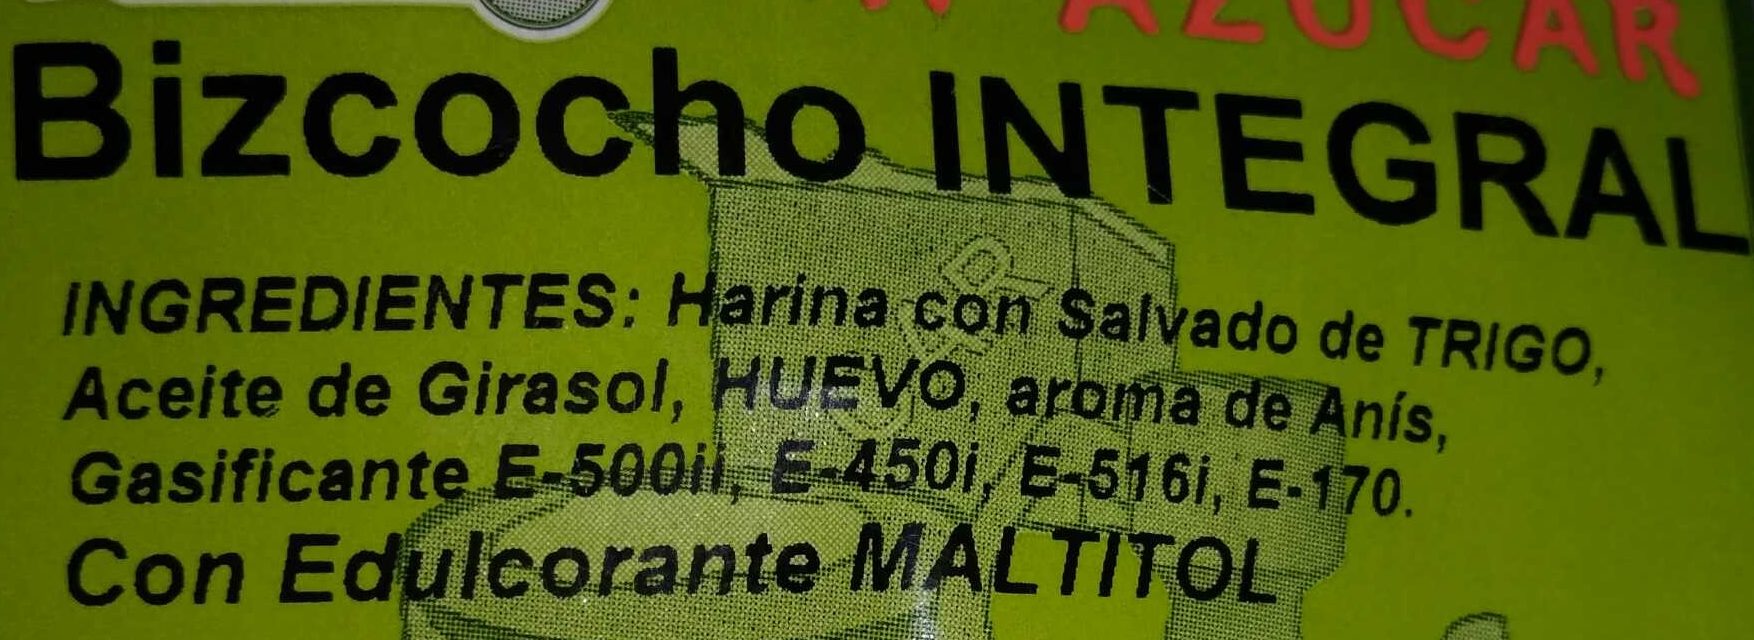 Bizcocho integral - Ingredients - es